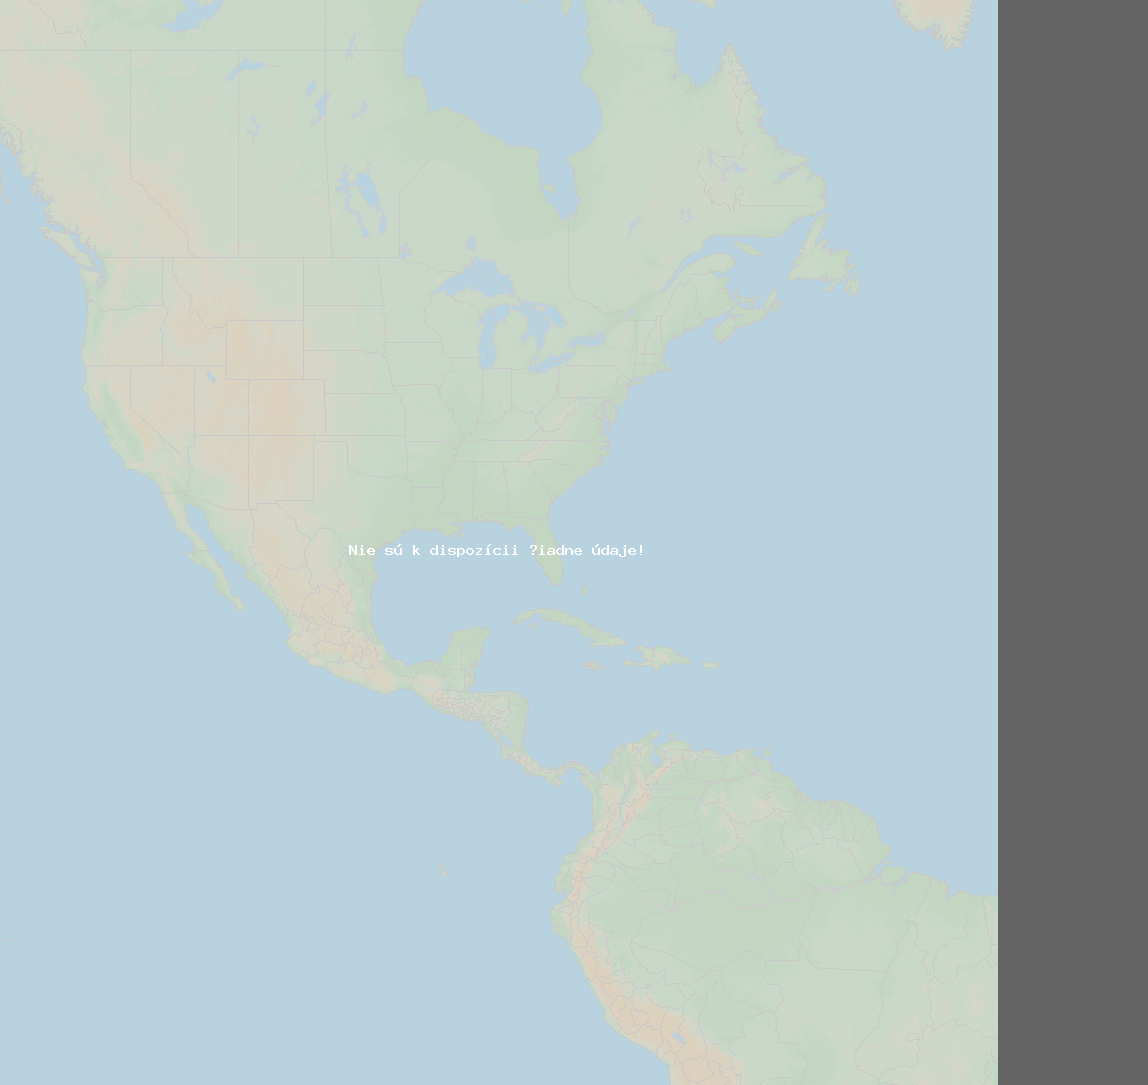 Pomer bleskov (Stanica Baie-Comeau QC) North America 2019 August